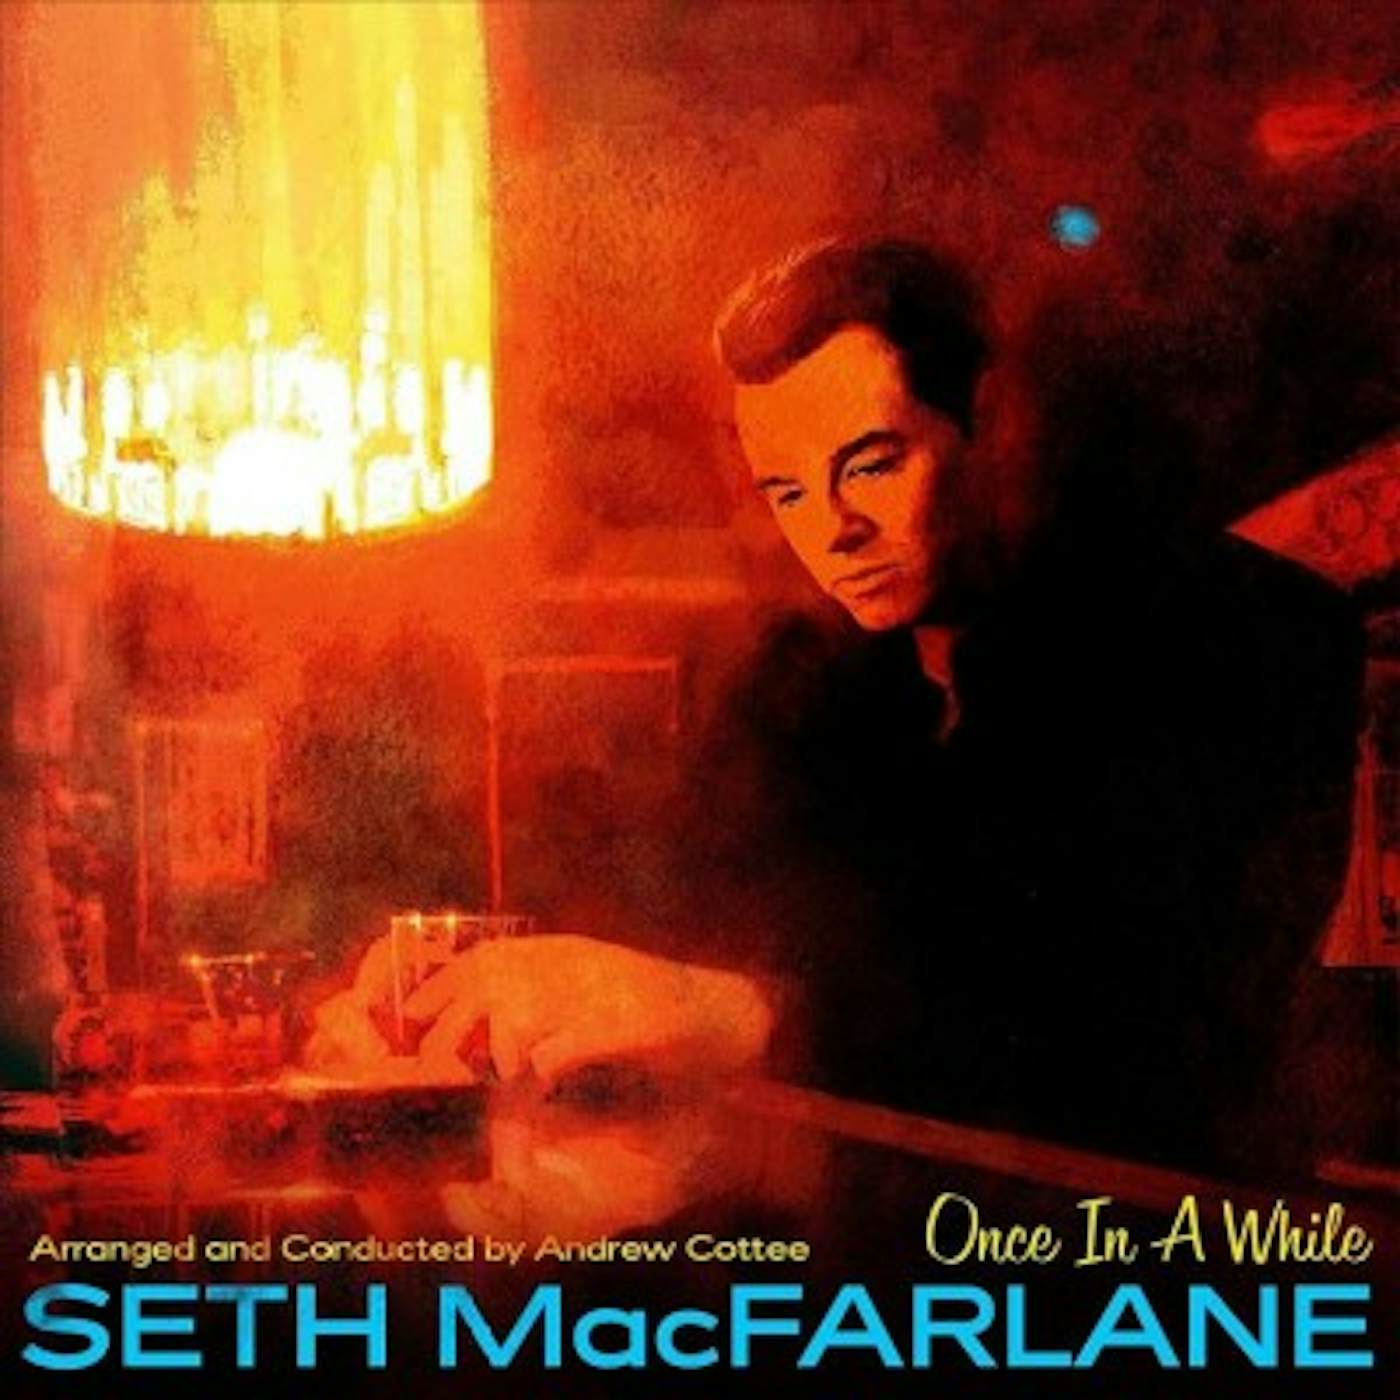 Seth MacFarlane ONCE IN A WHILE CD